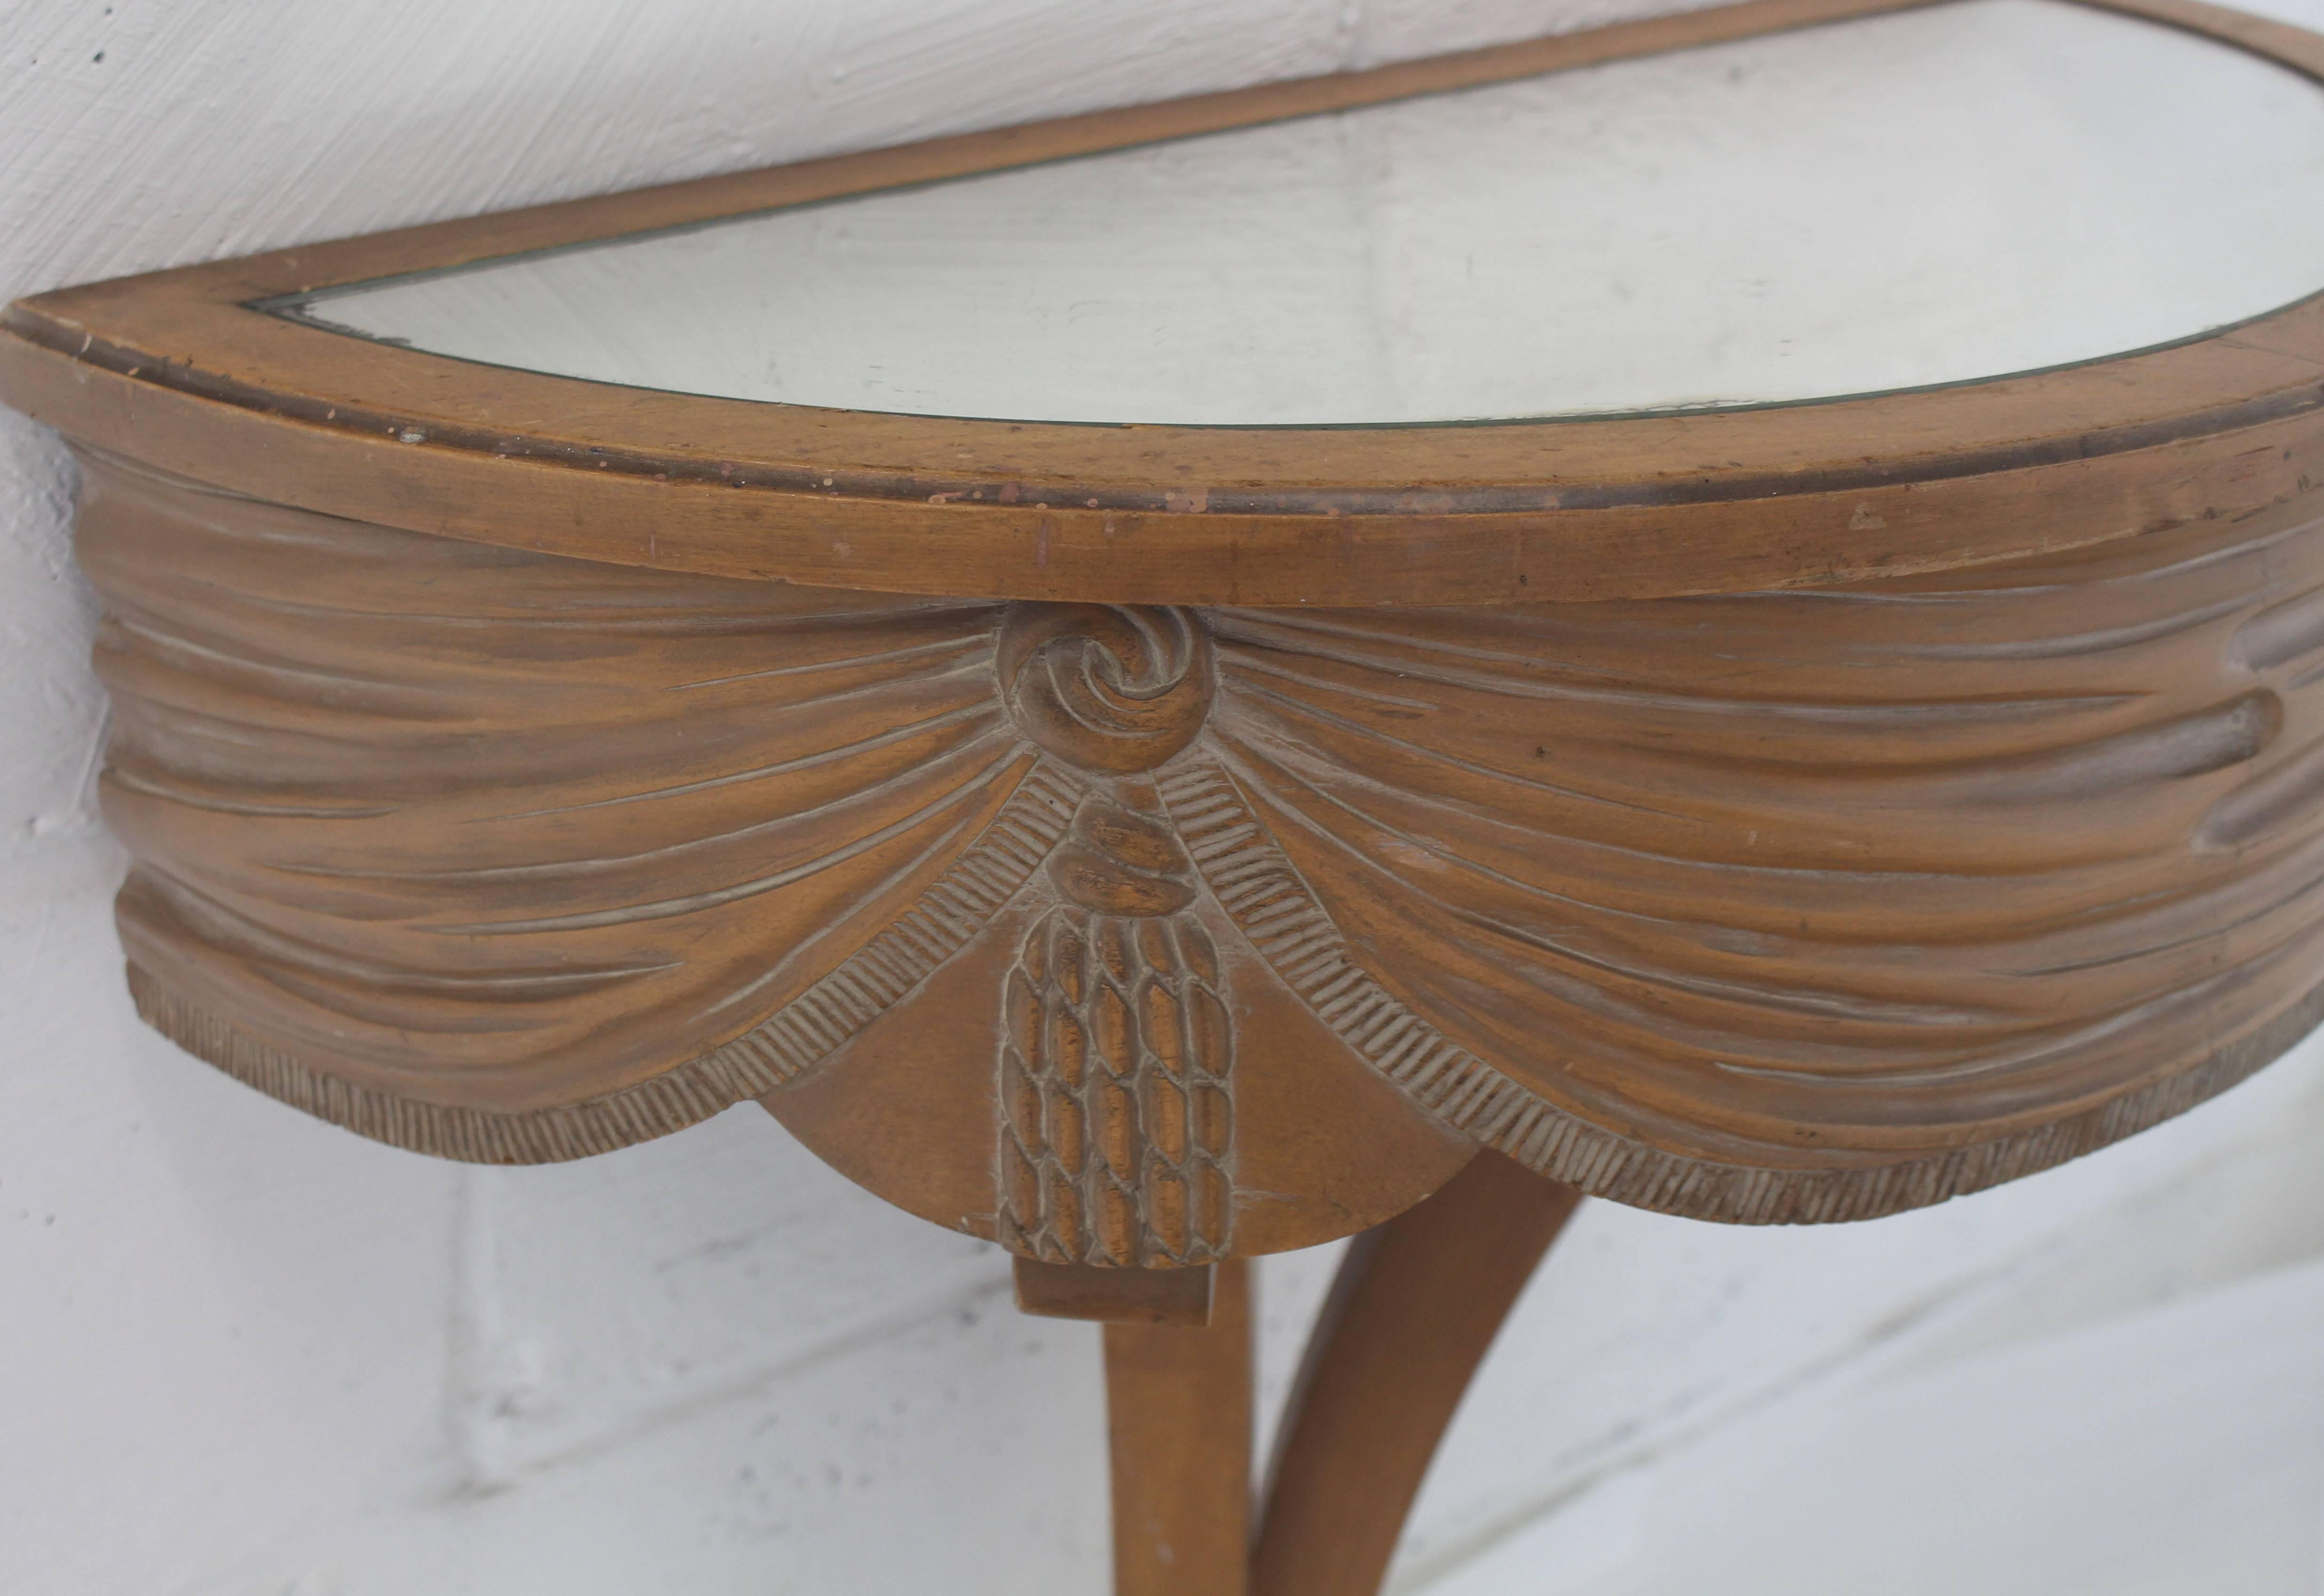 Bleached Art Nouveau Deco Mirror Top Carved Demilune Console Table